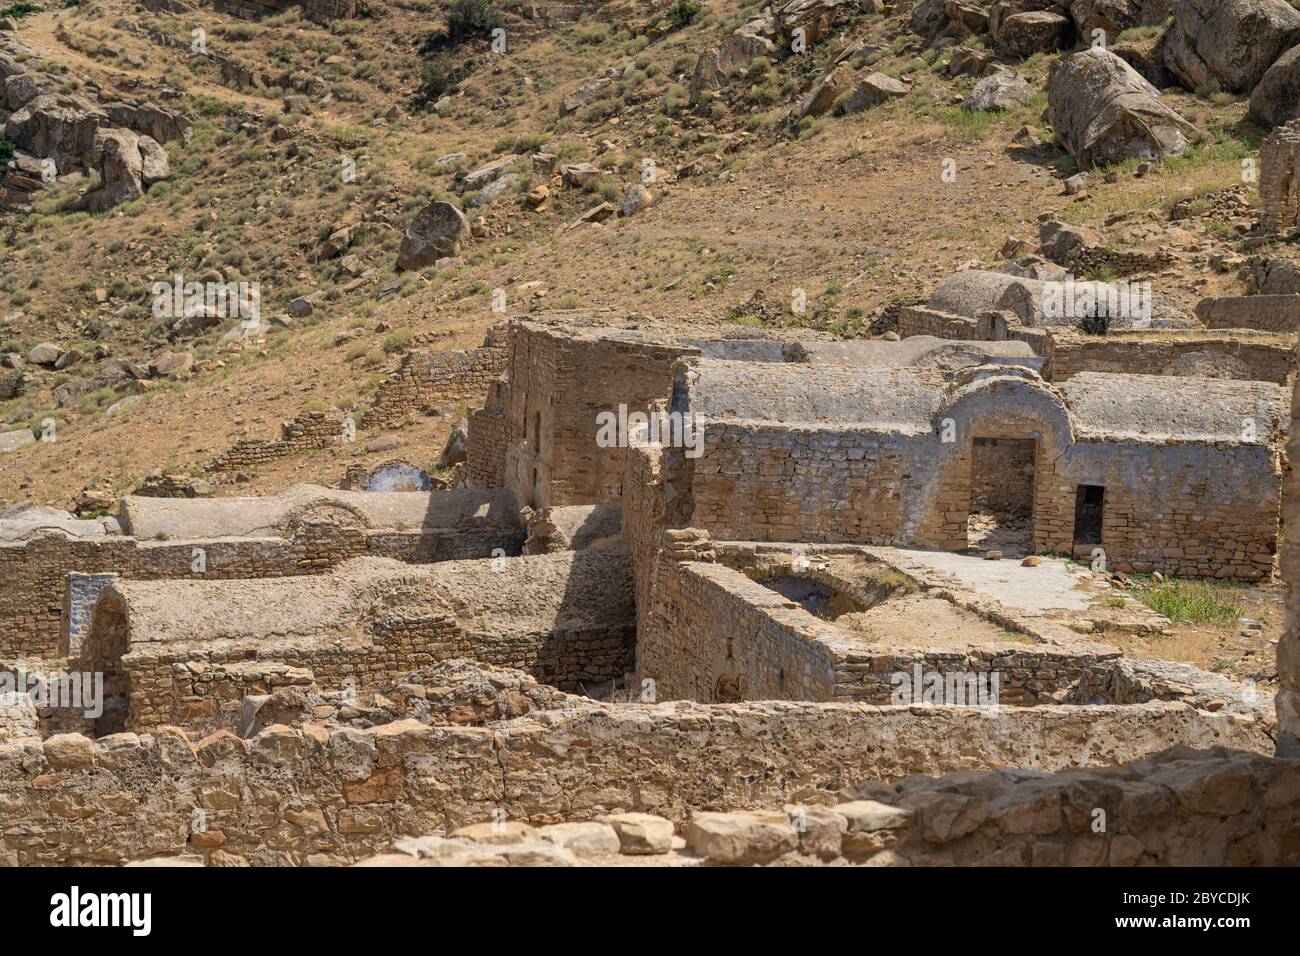 The abandonned berber village of Zriba, Tunisia Stock Photo